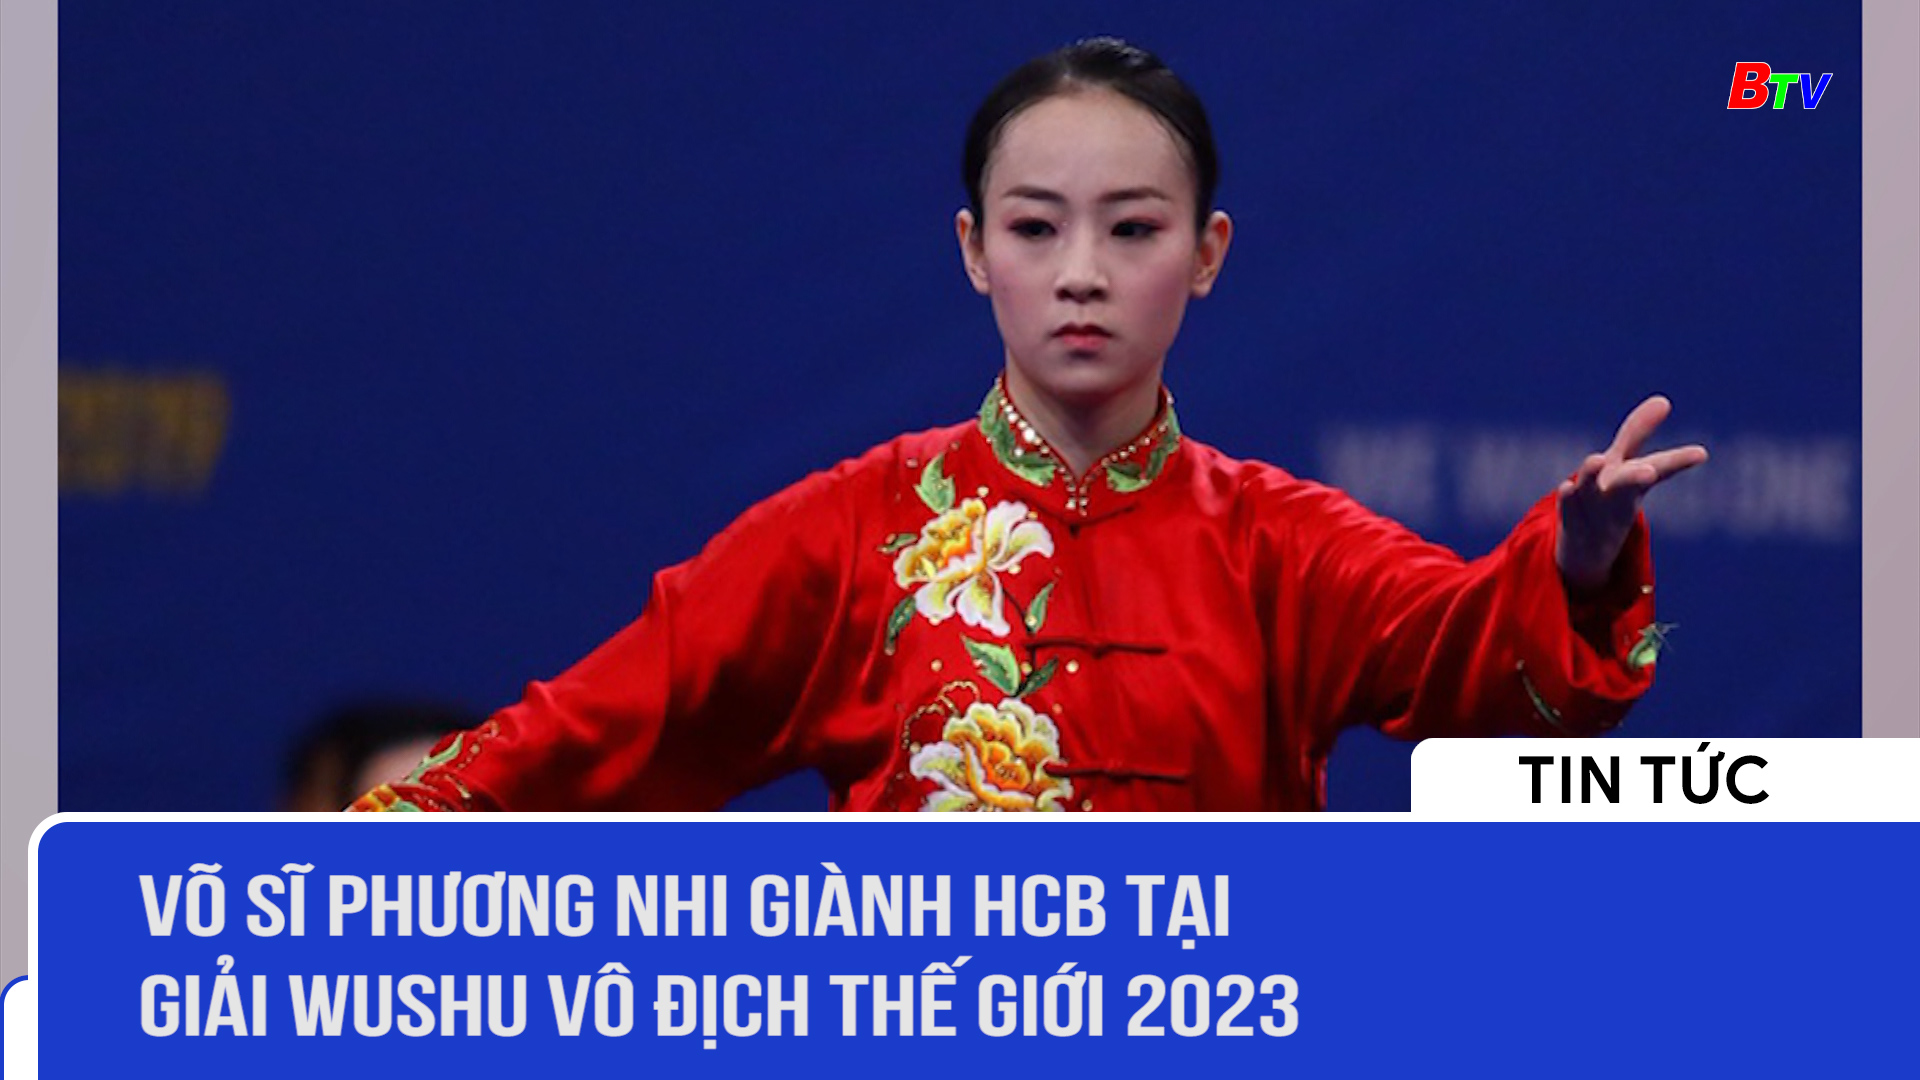 Võ sĩ Phương Nhi giành HCB tại Giải Wushu vô địch thế giới 2023